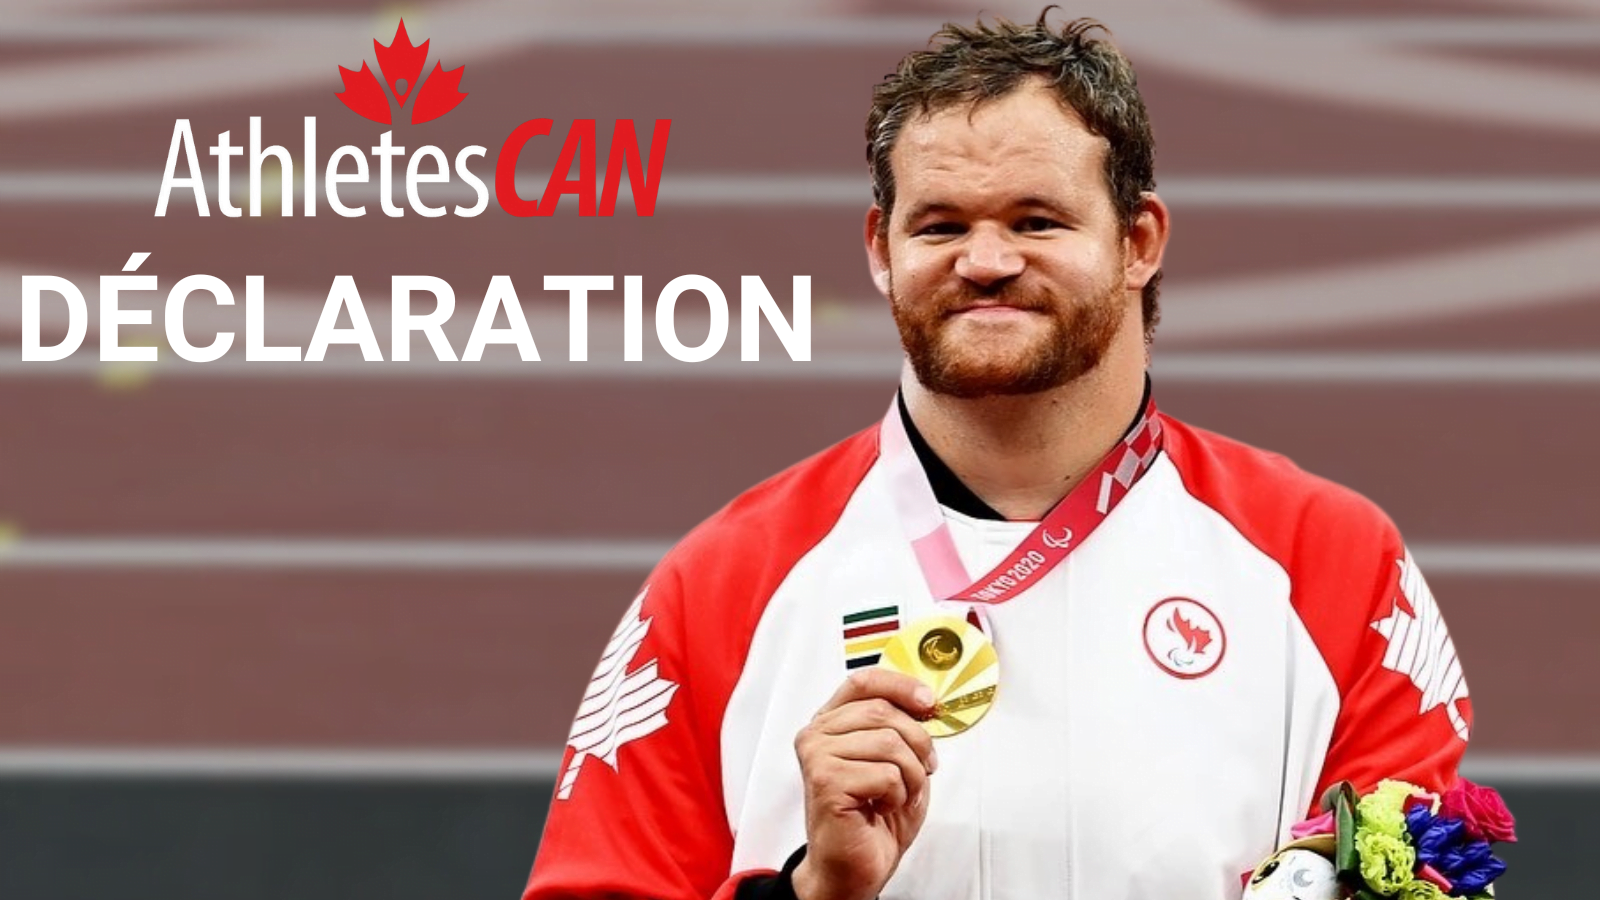 Déclaration : AthlètesCAN salue l’égalité de la reconnaissance financière pour les performances sur le podium des Canadiens aux Jeux paralympiques